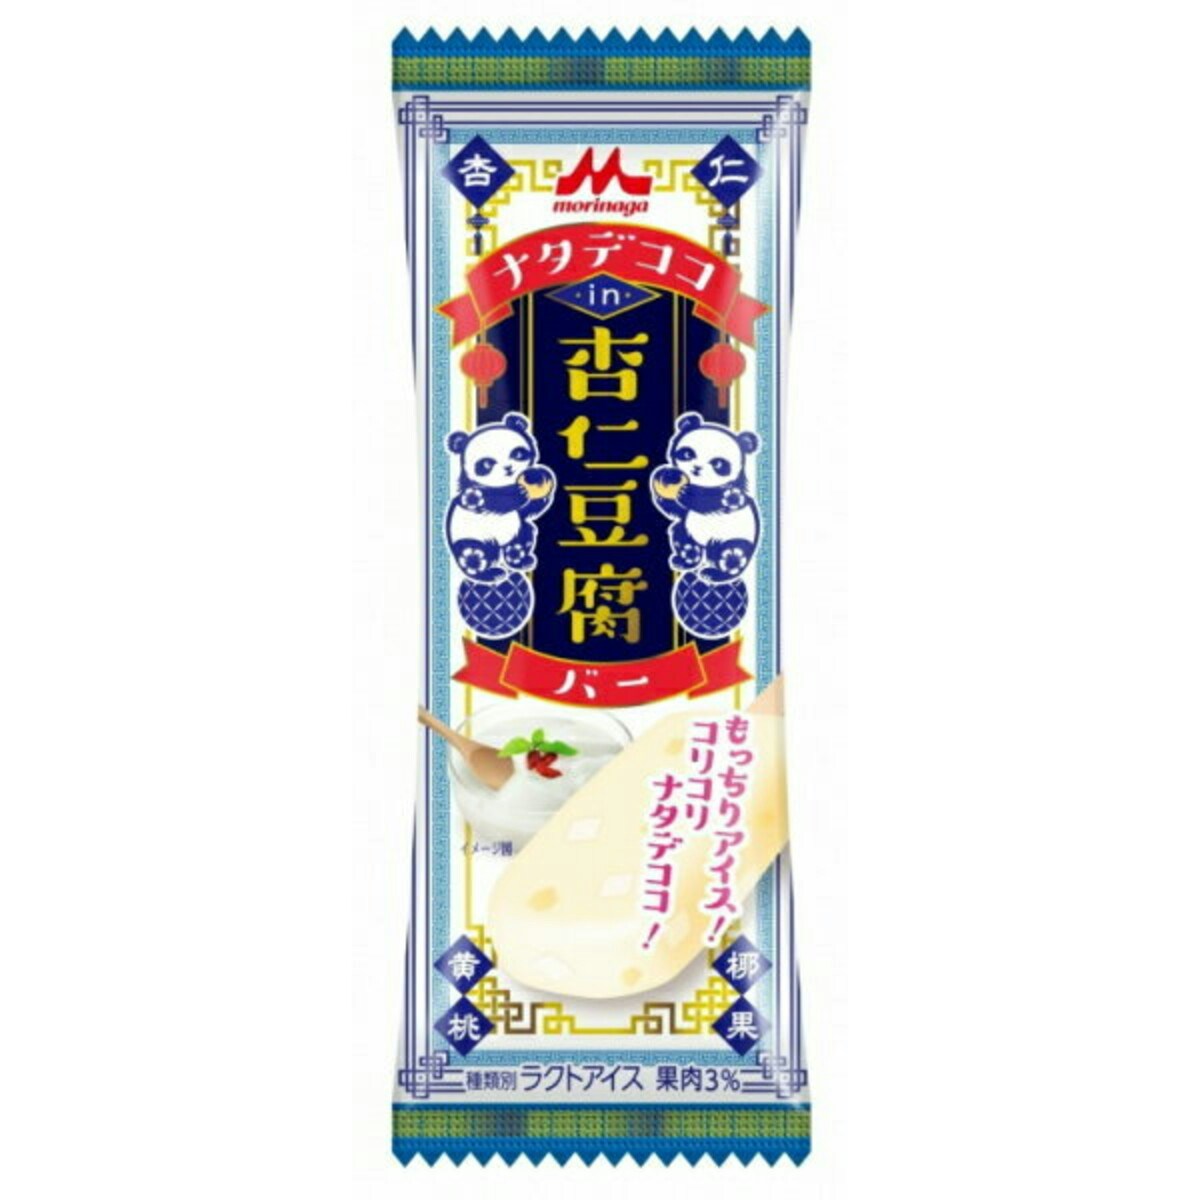 森永乳業 ナタデココin杏仁豆腐バー